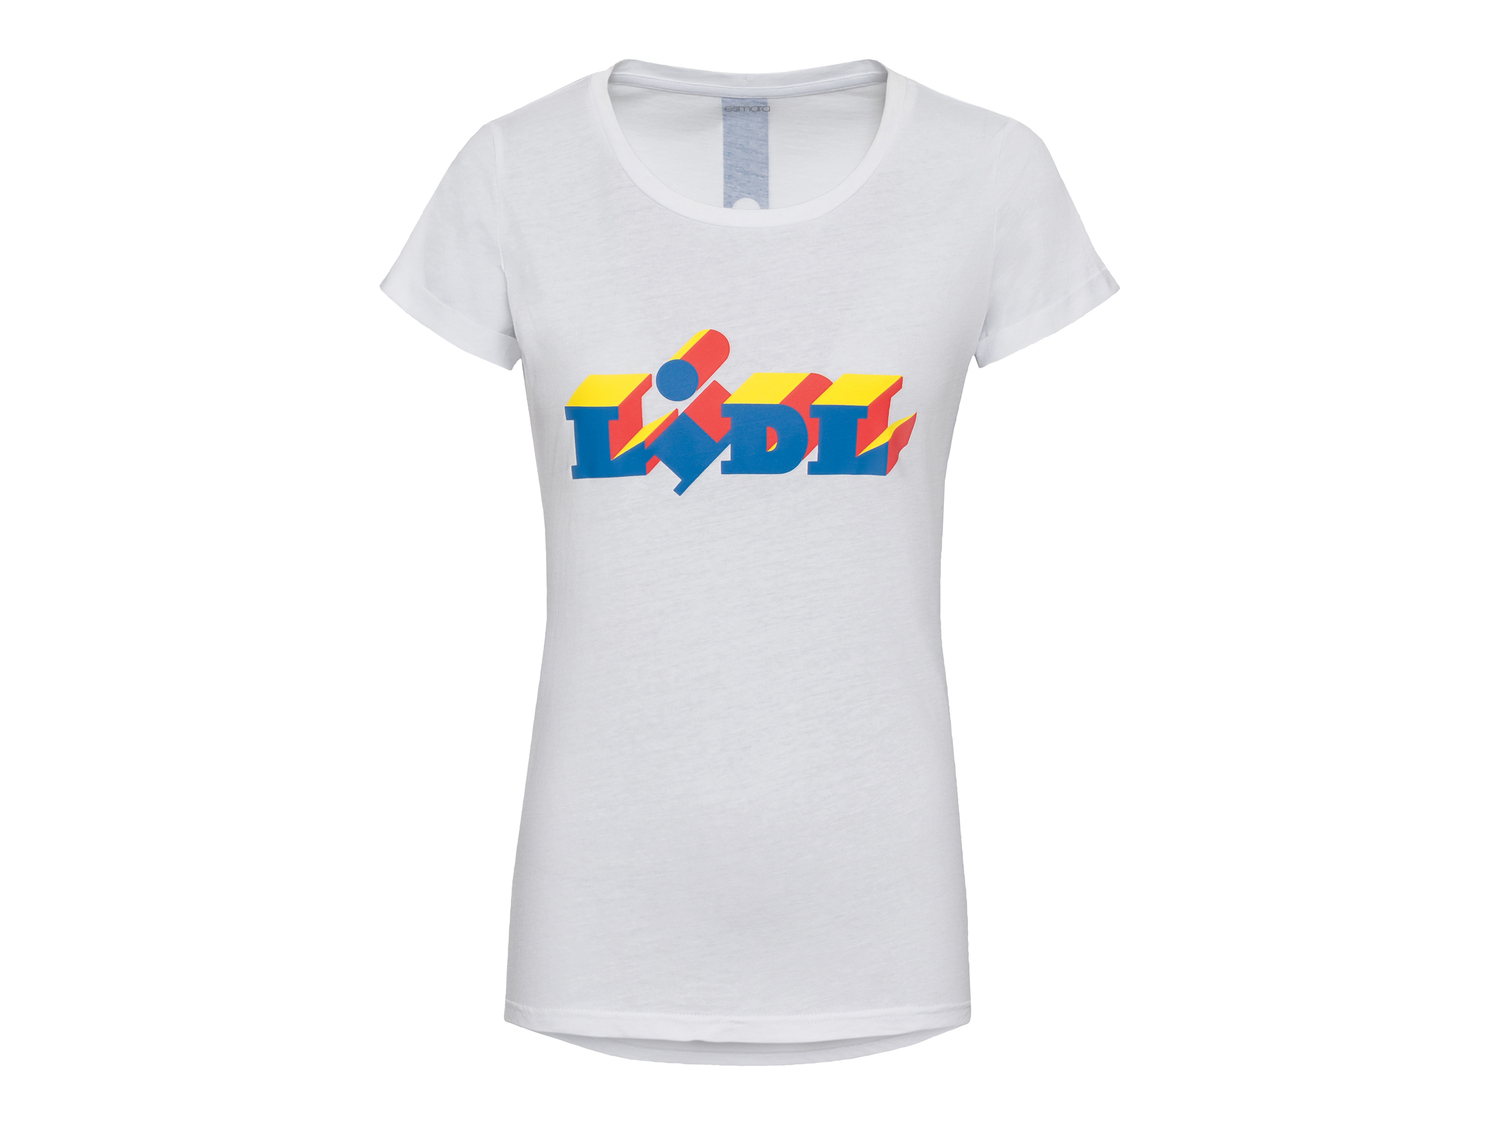 T-shirt da donna Lidl Esmara, prezzo 4.99 € 
#lidlshirt 
- Misure: S-L
- 100% ...